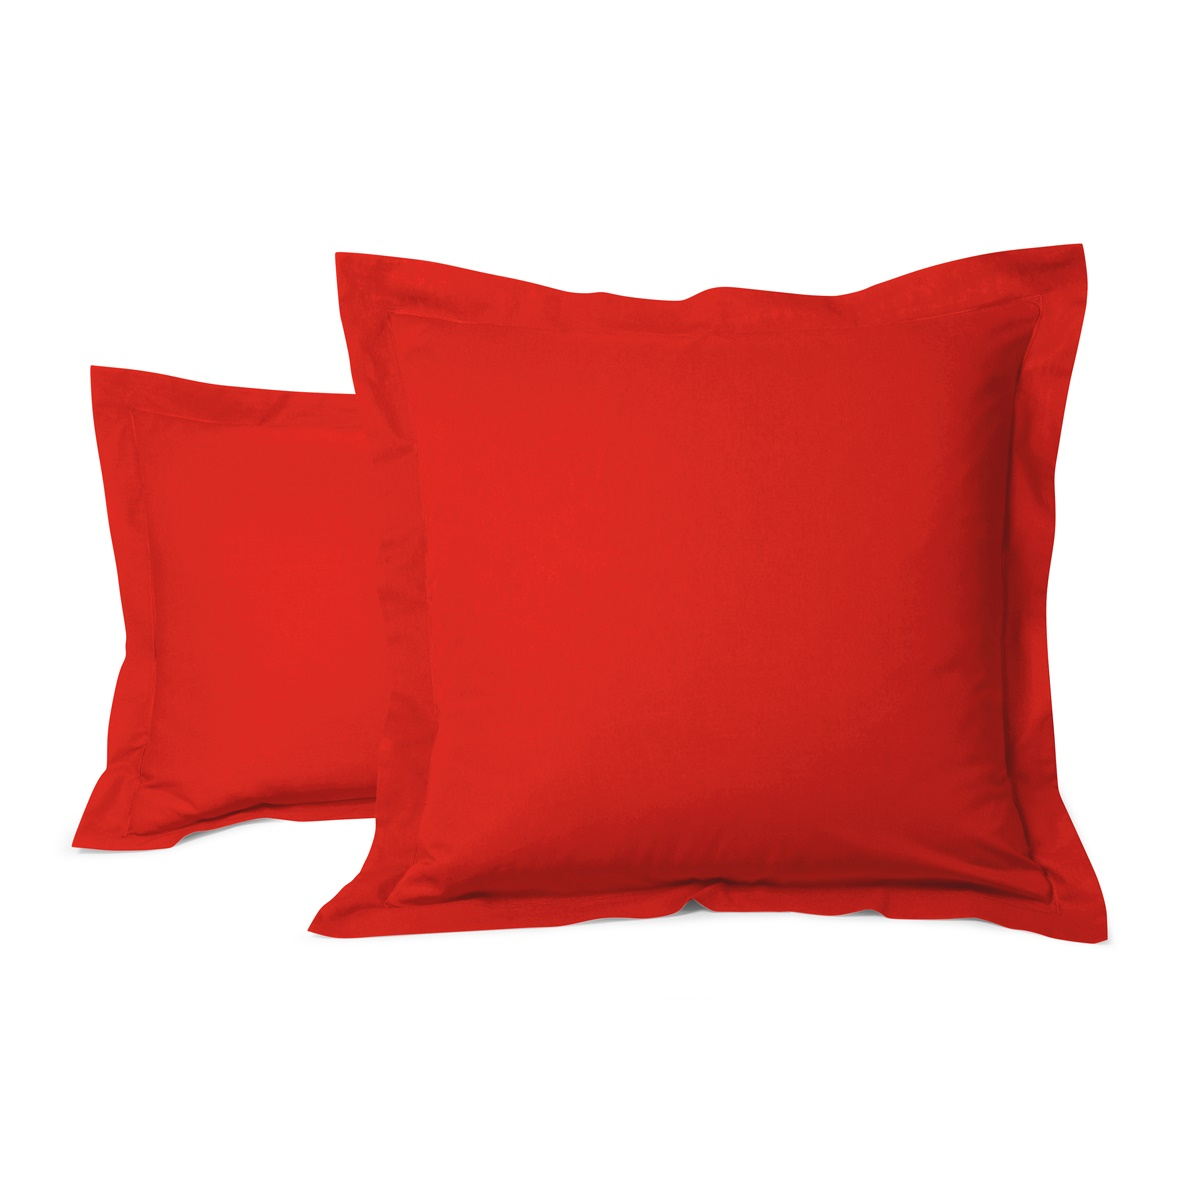 Cotton Pillow Cases red | Bed linen | Tradition des Vosges